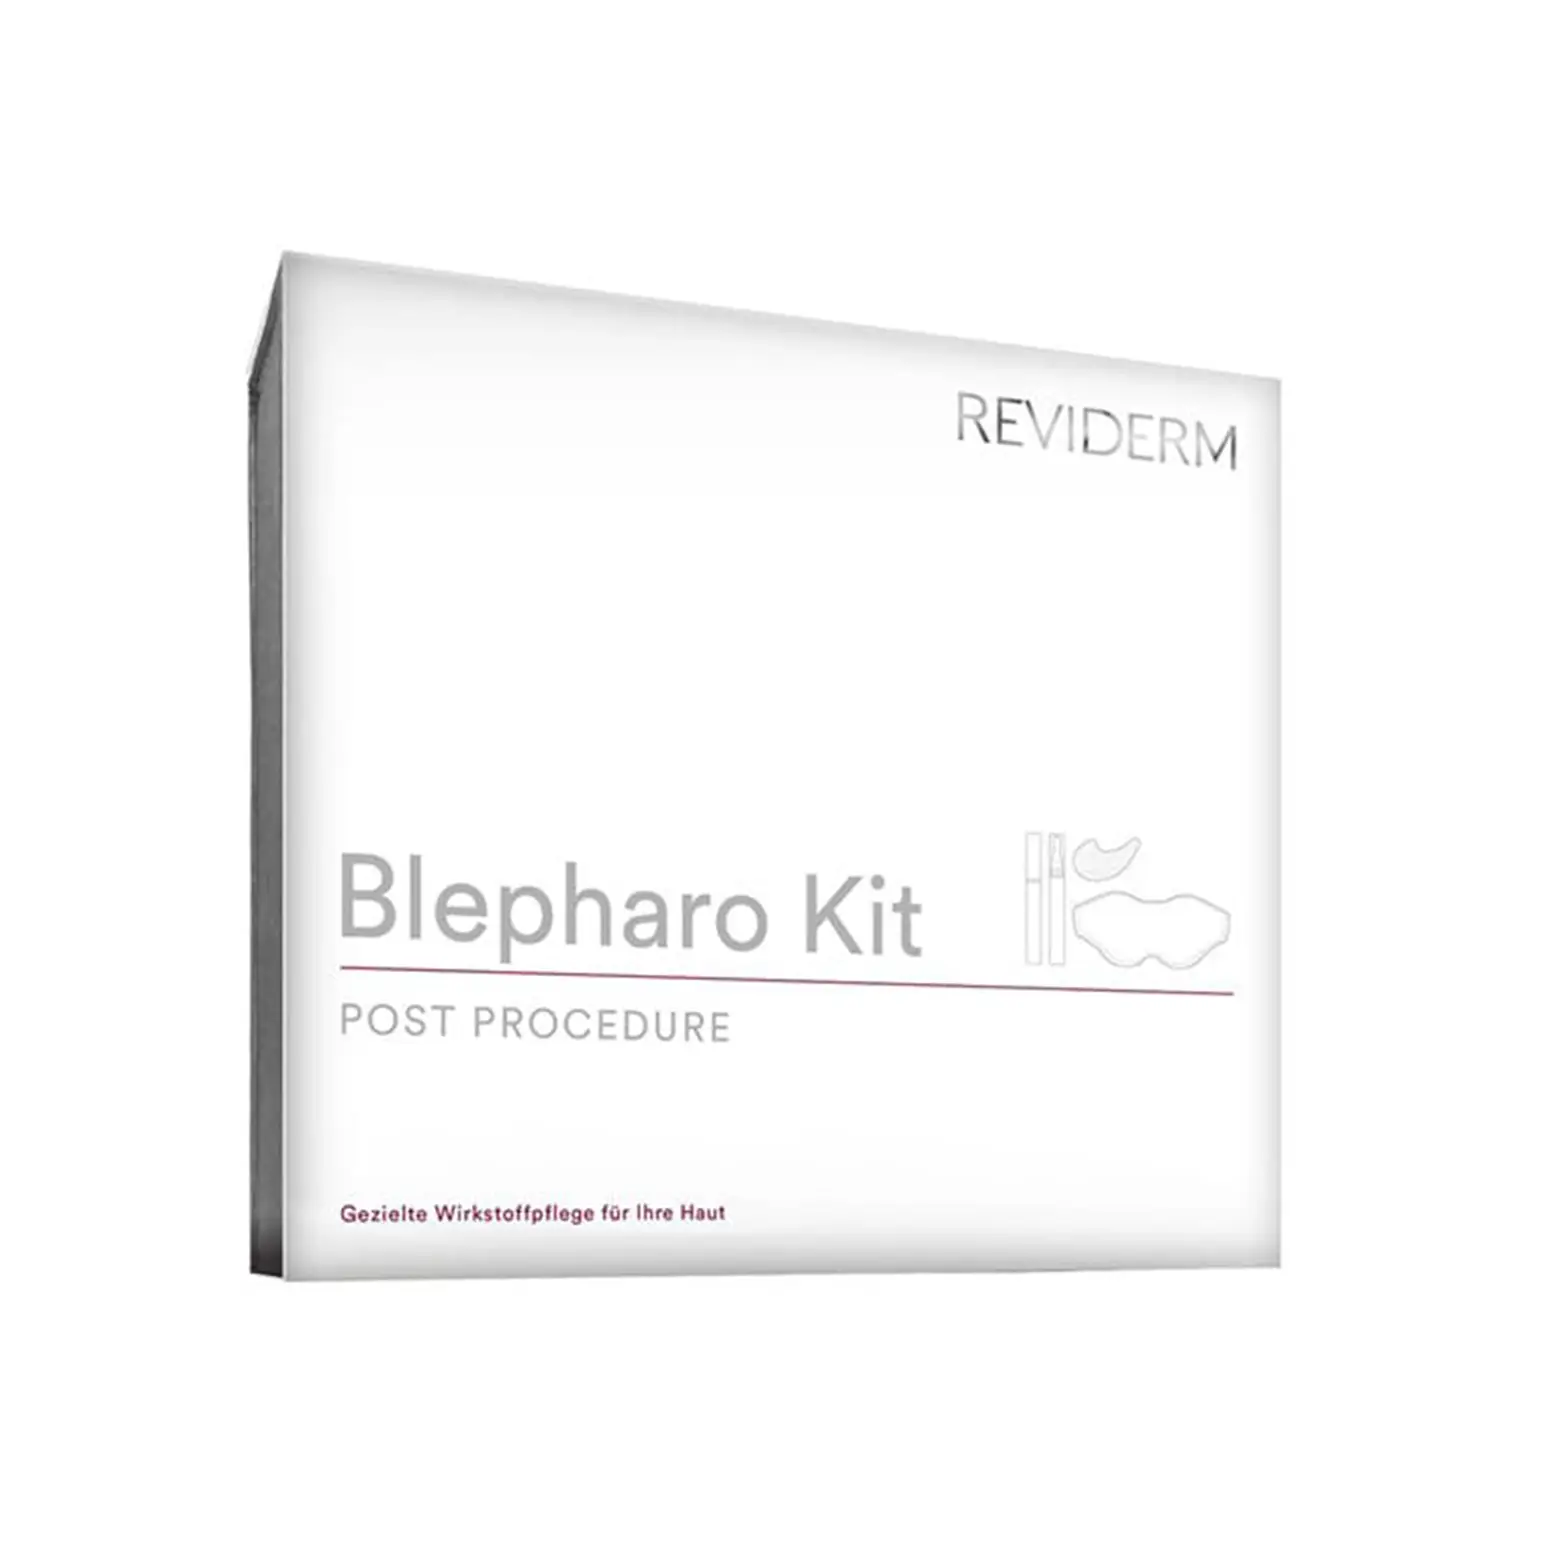 Reviderm Blepharo Kit nabehandeling